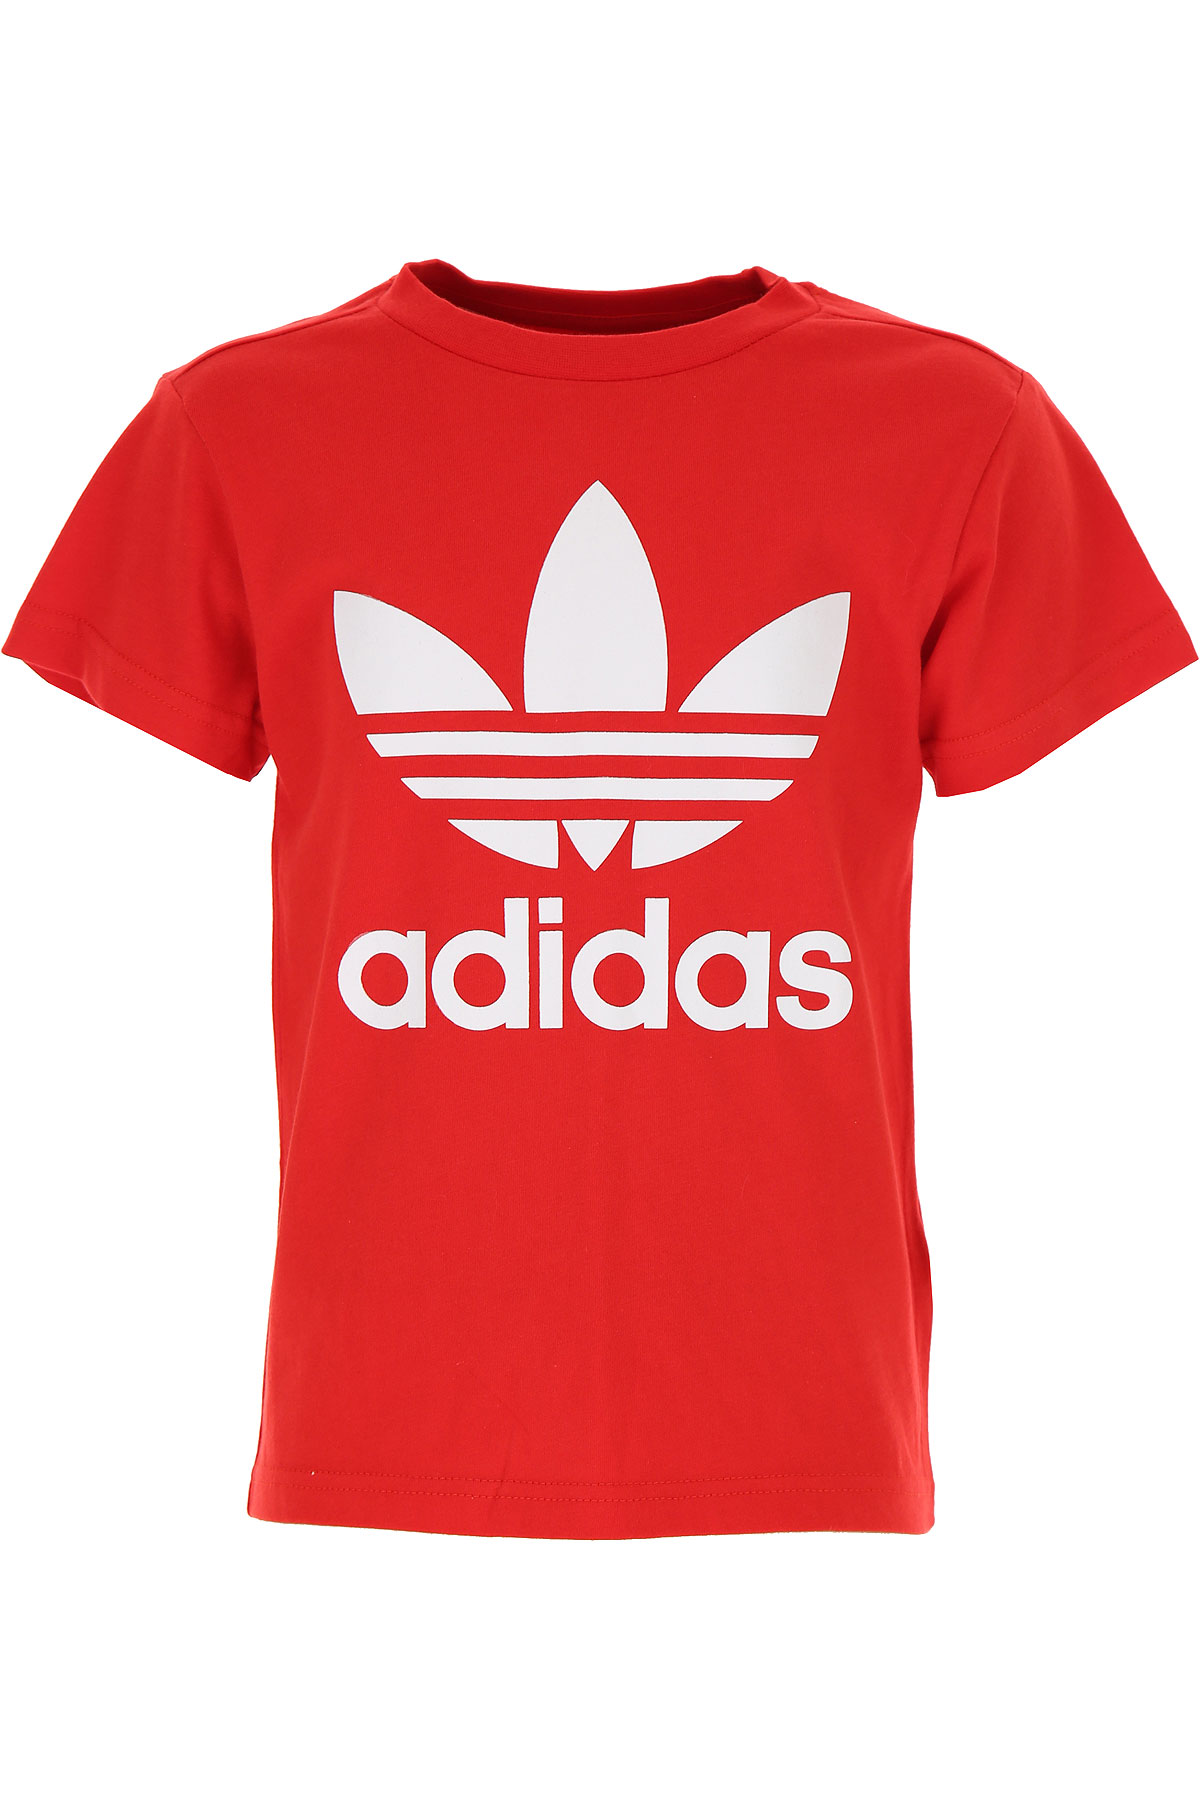 Adidas Kinder T-Shirt für Jungen Günstig im Sale, Rot, Baumwolle, 2017, 11Y 8Y